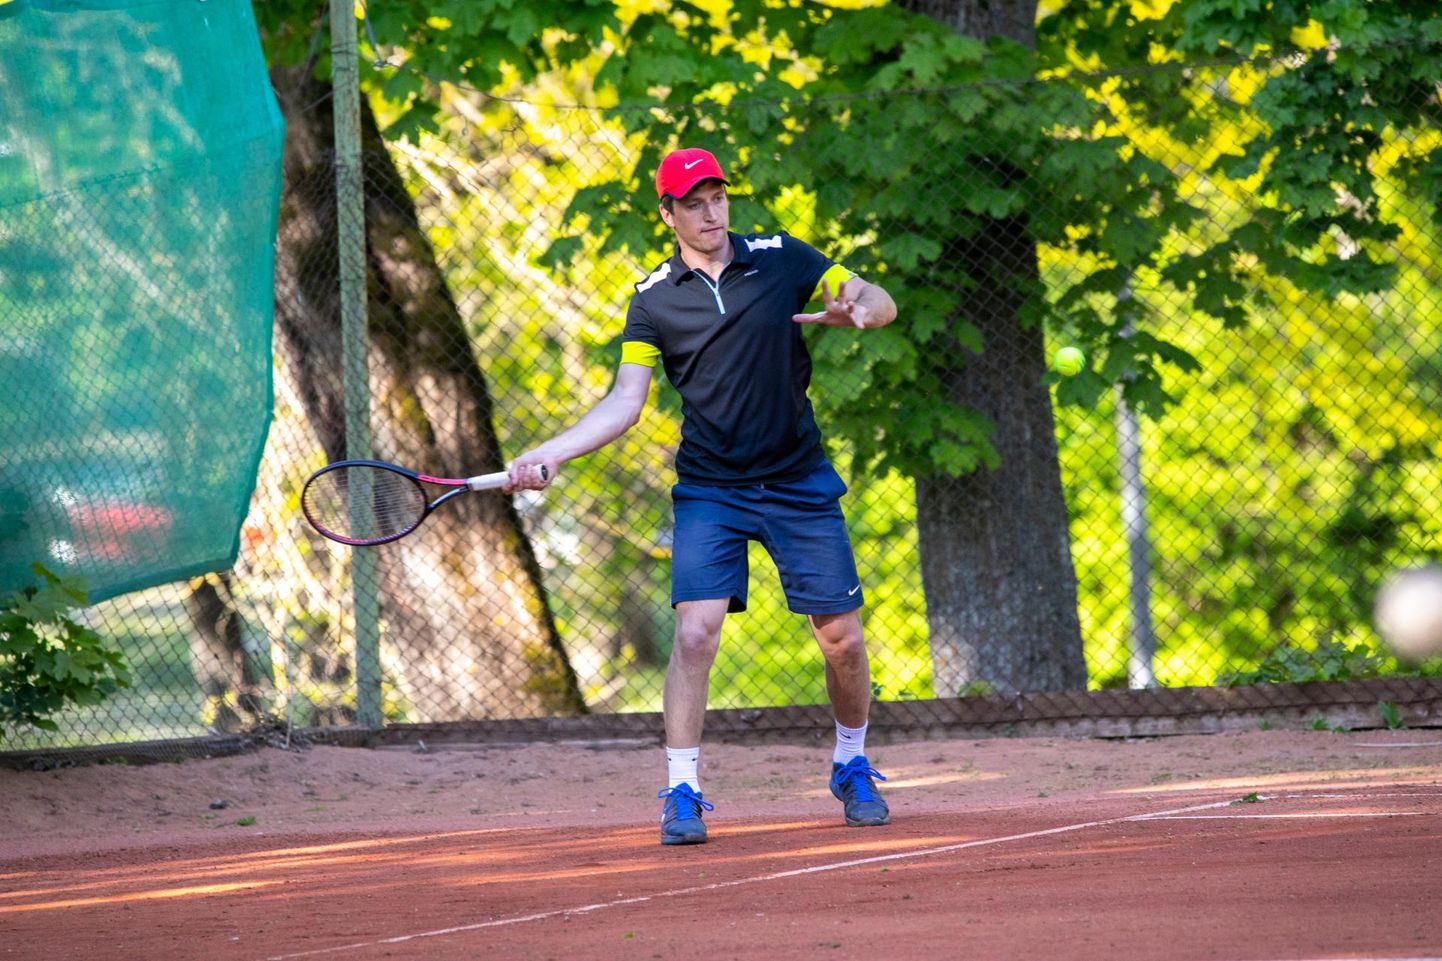 Rakvere spordielu üks eestvedajaid, kohaliku spordikeskuse juht Siim Tuus (pildil) toob koos ettevõtja Kristjan Madissoniga tennise suurturniiri korraldamisega kodukanti värskeid tuuli.